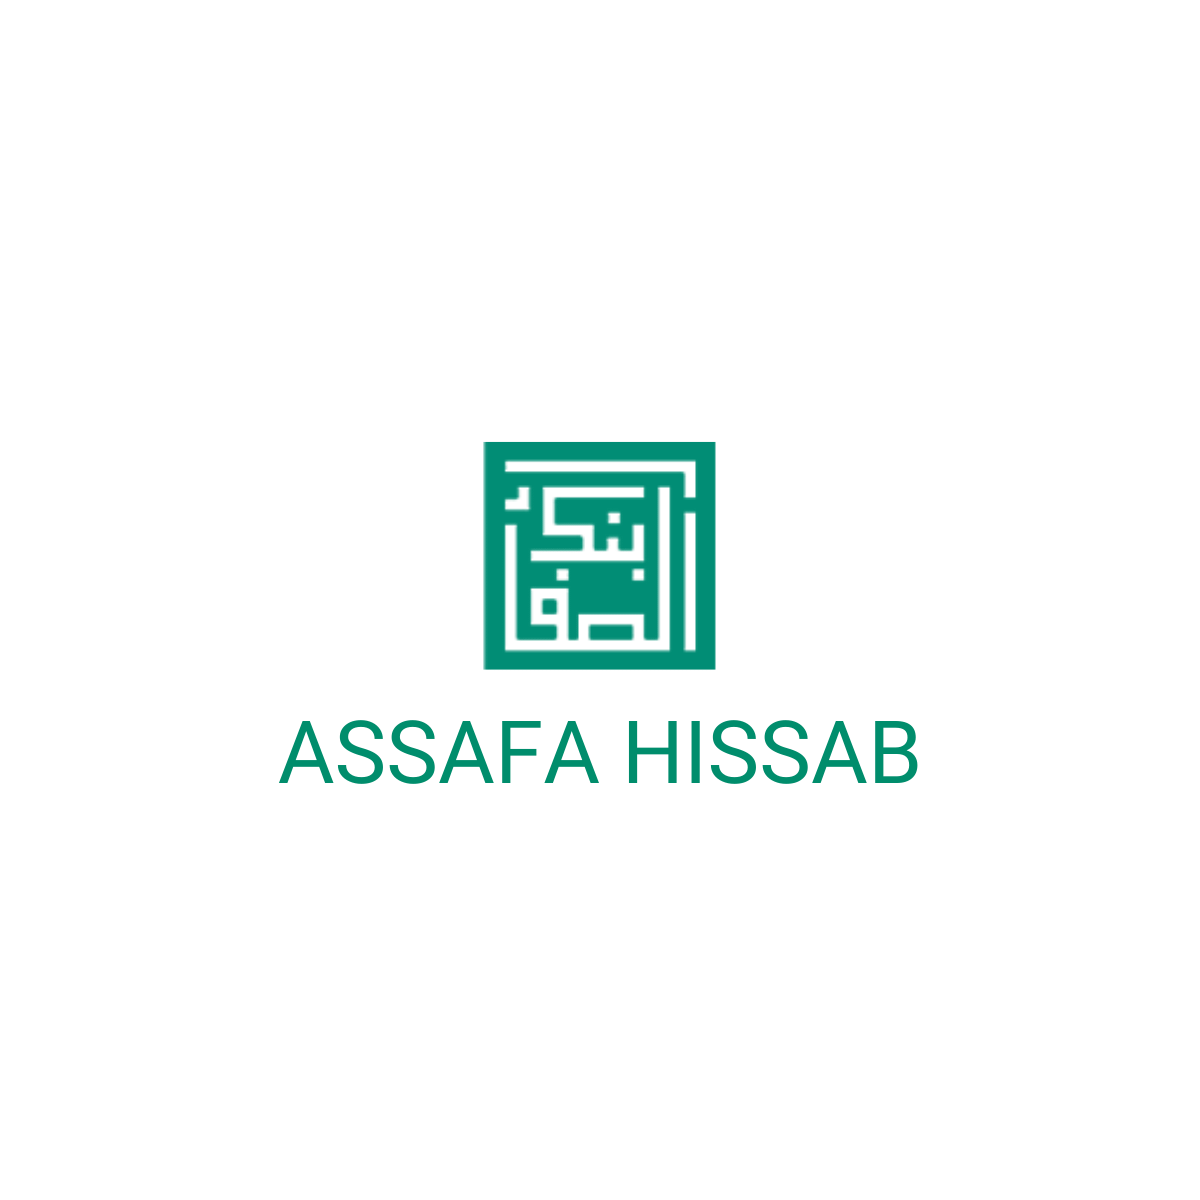 Assafa hissab